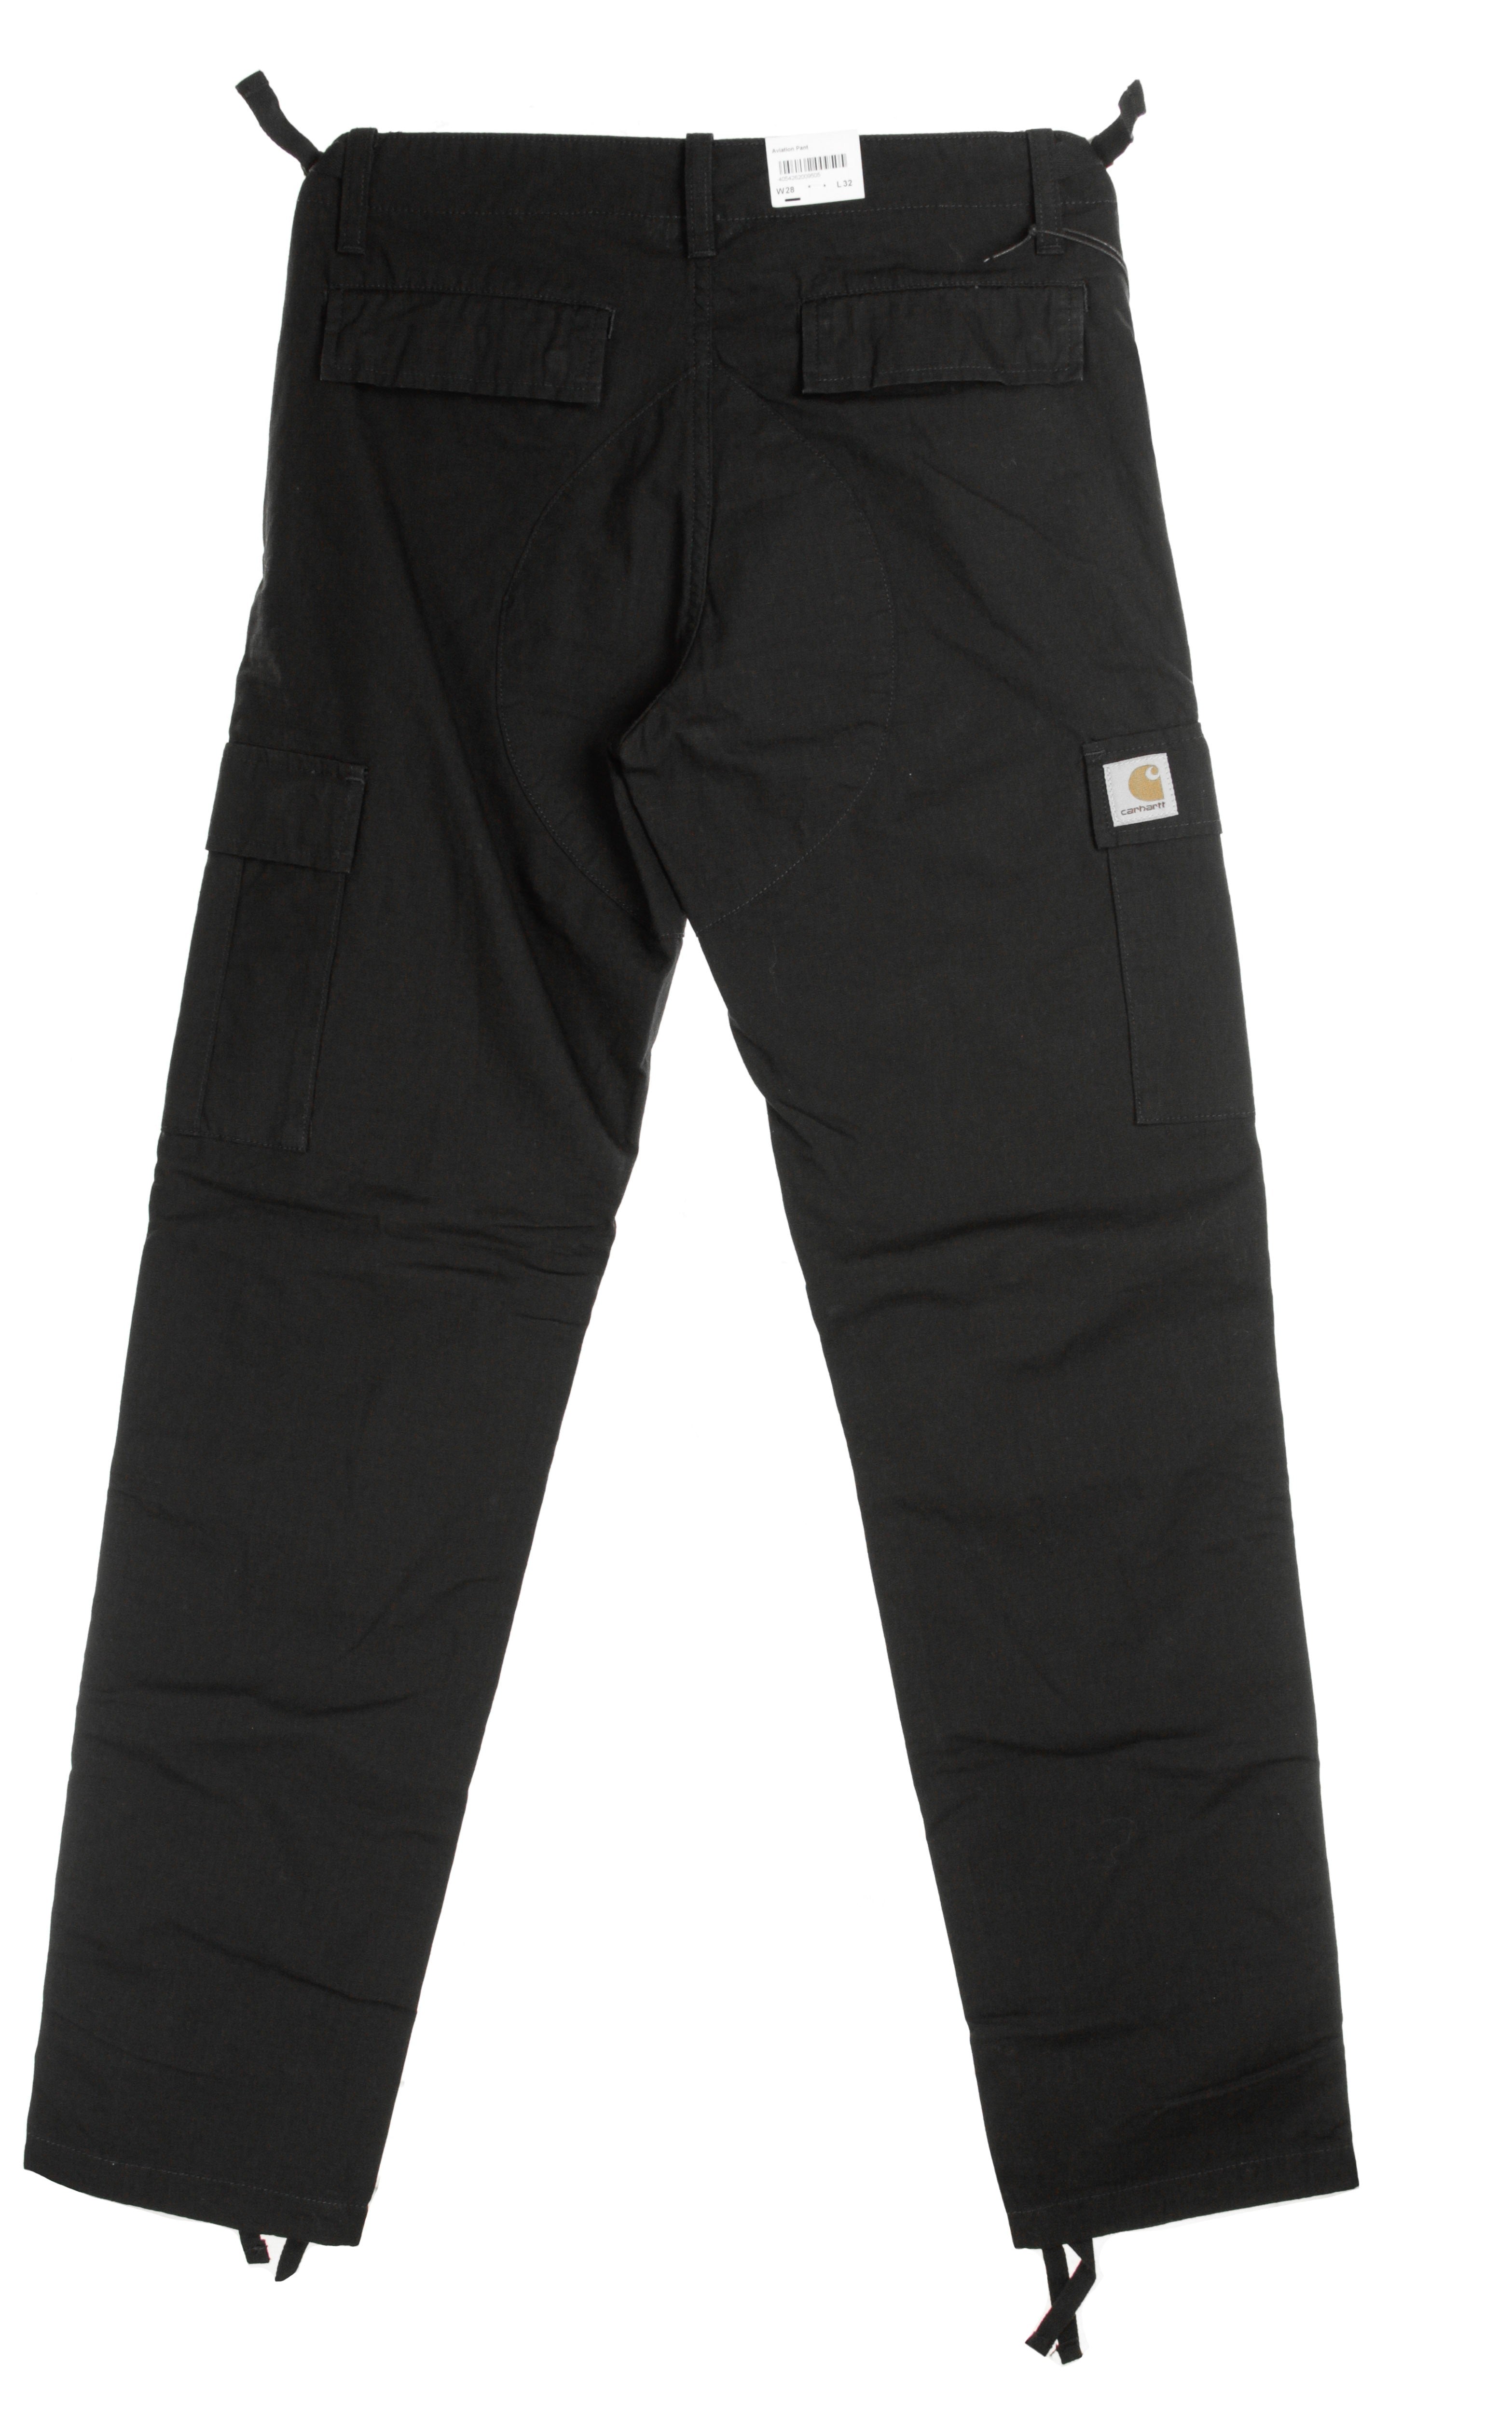 Pantalone Lungo Uomo Aviation Pant Black Rinsed